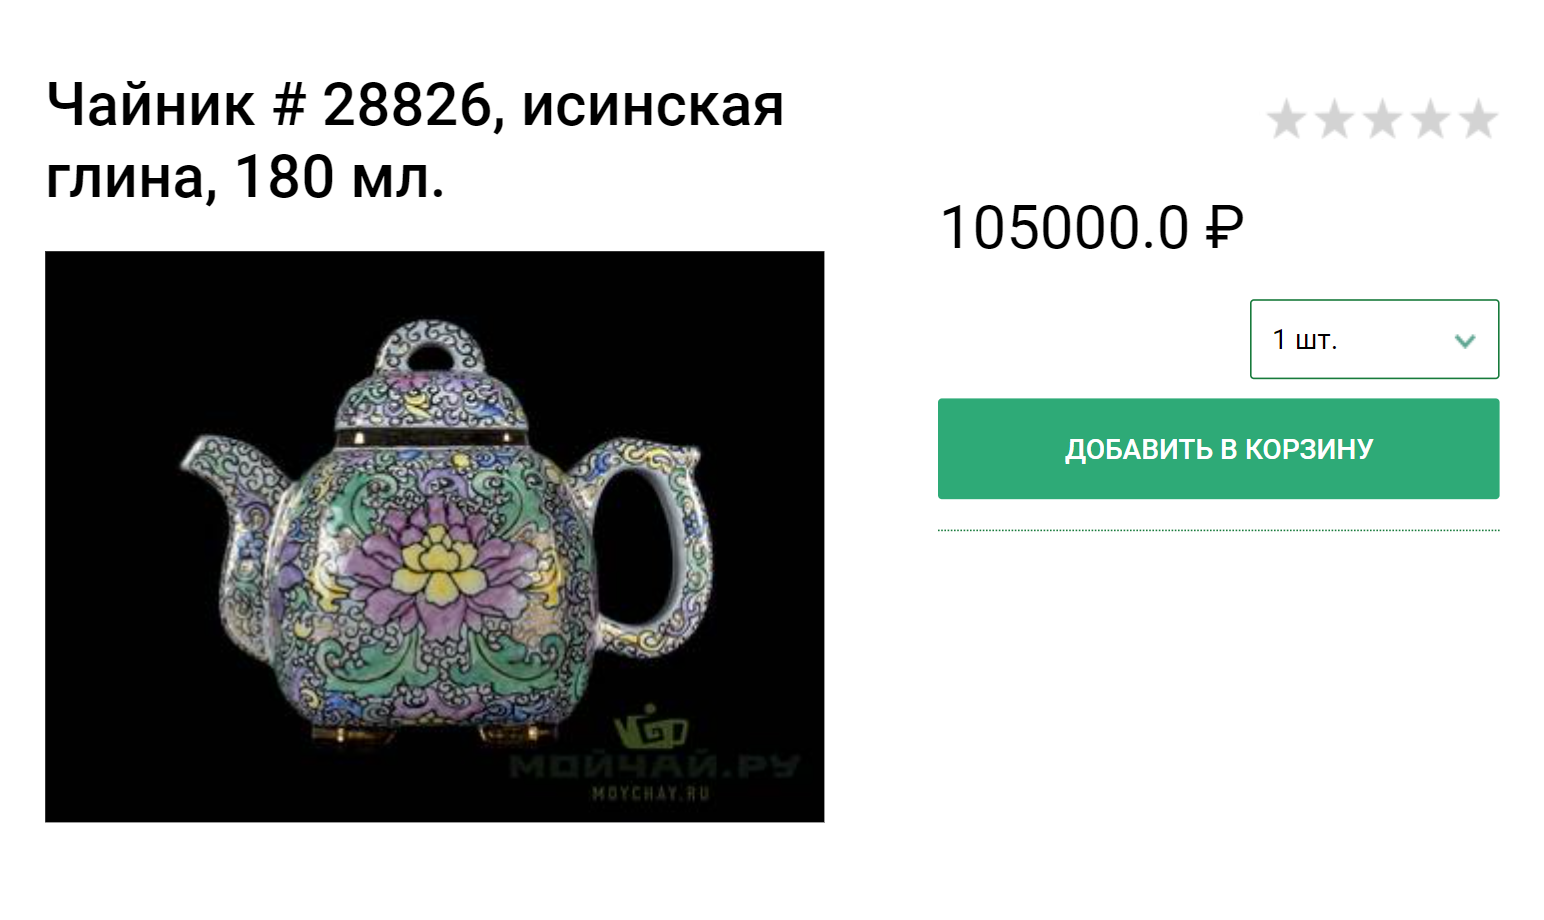 Красиво украшенные исинские чайники могут стоить и больше 100 тысяч рублей. Источник: moychay.ru